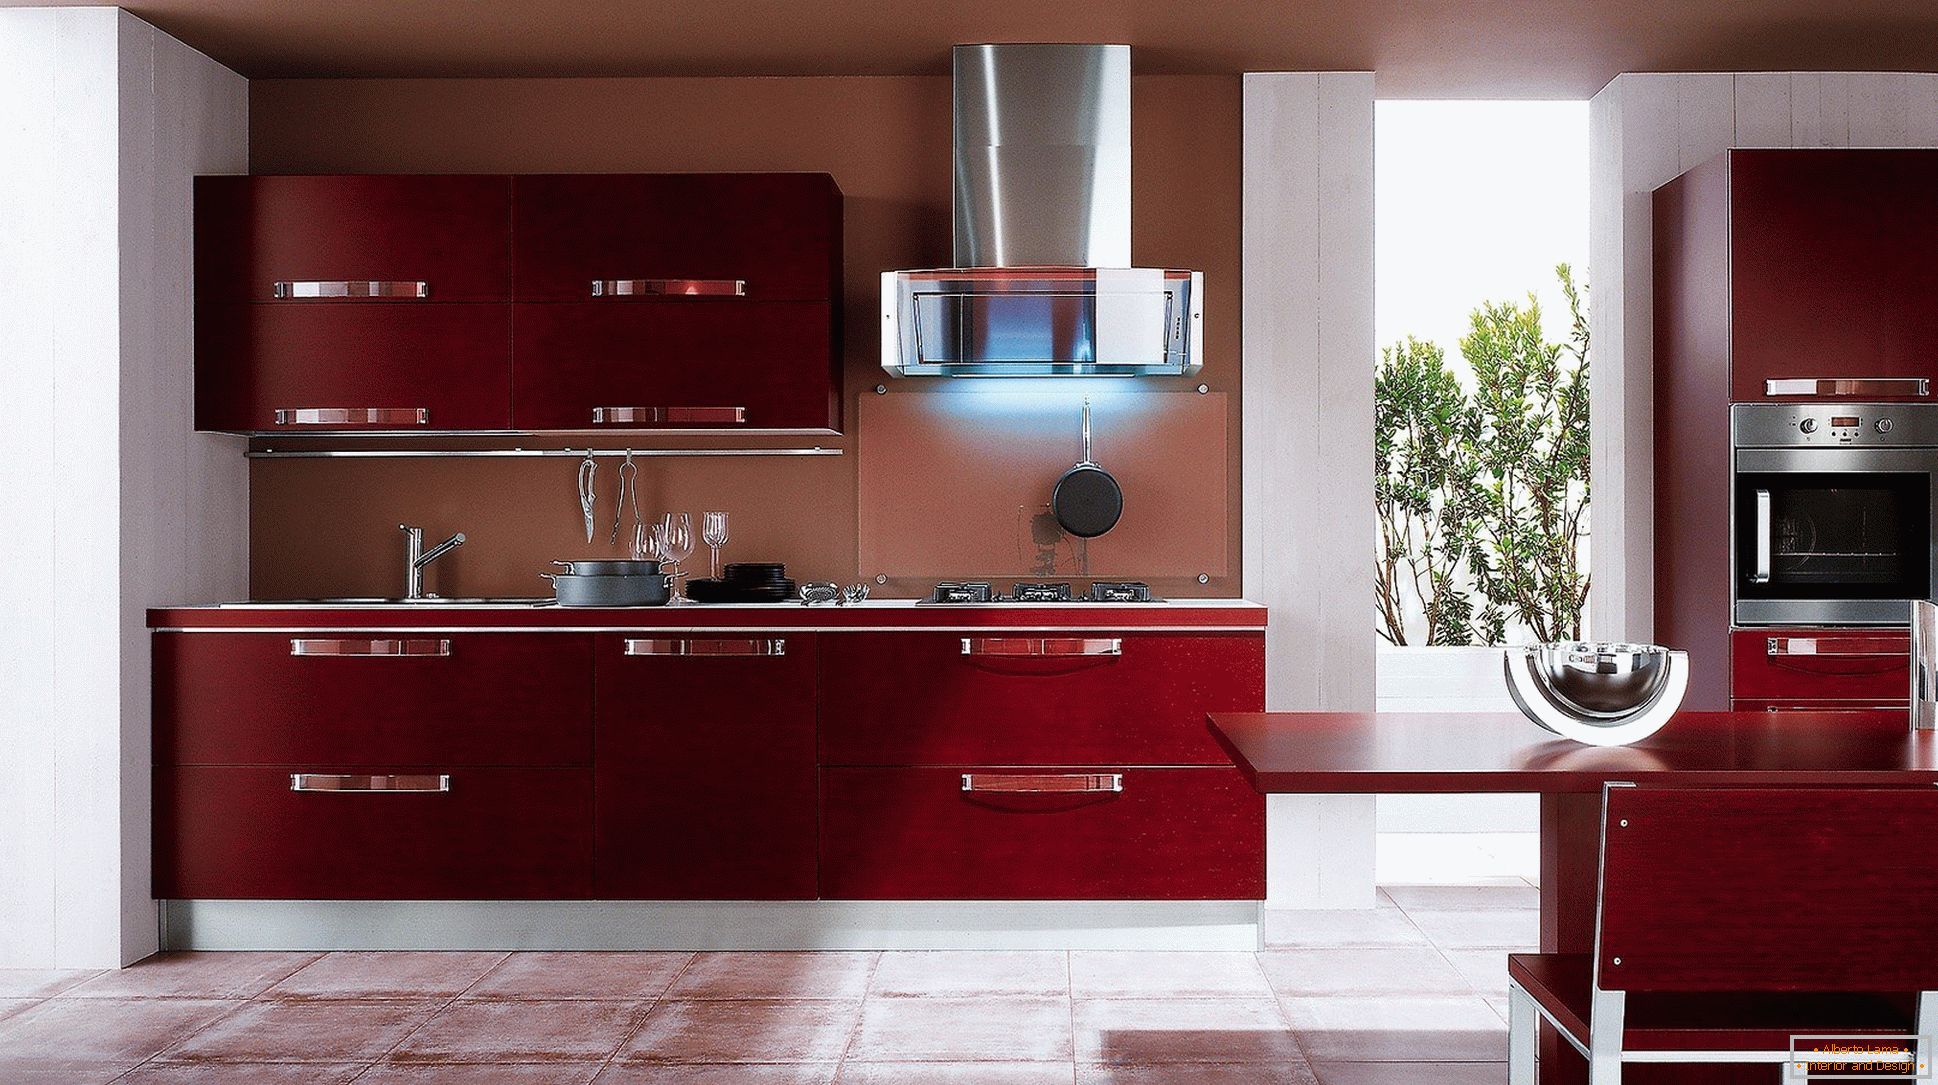 Поєднання кольору бордо і металевих елементів кухні